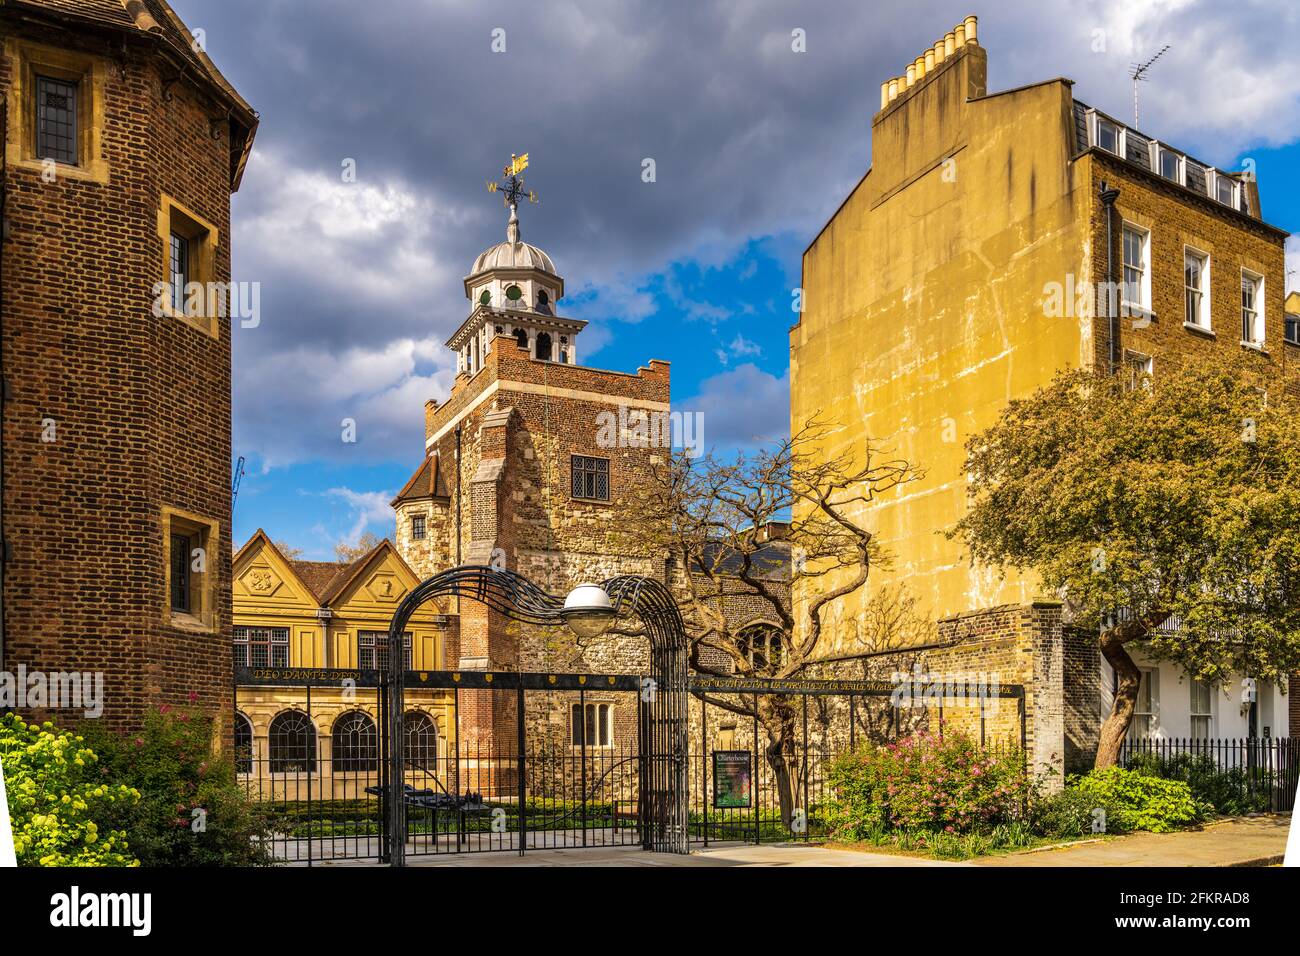 The London Charterhouse - The Charterhouse in Smithfield London ist ein Gebäudekomplex aus dem 14. Jahrhundert. Klasse I aufgeführt. Tudor Palace. Stockfoto